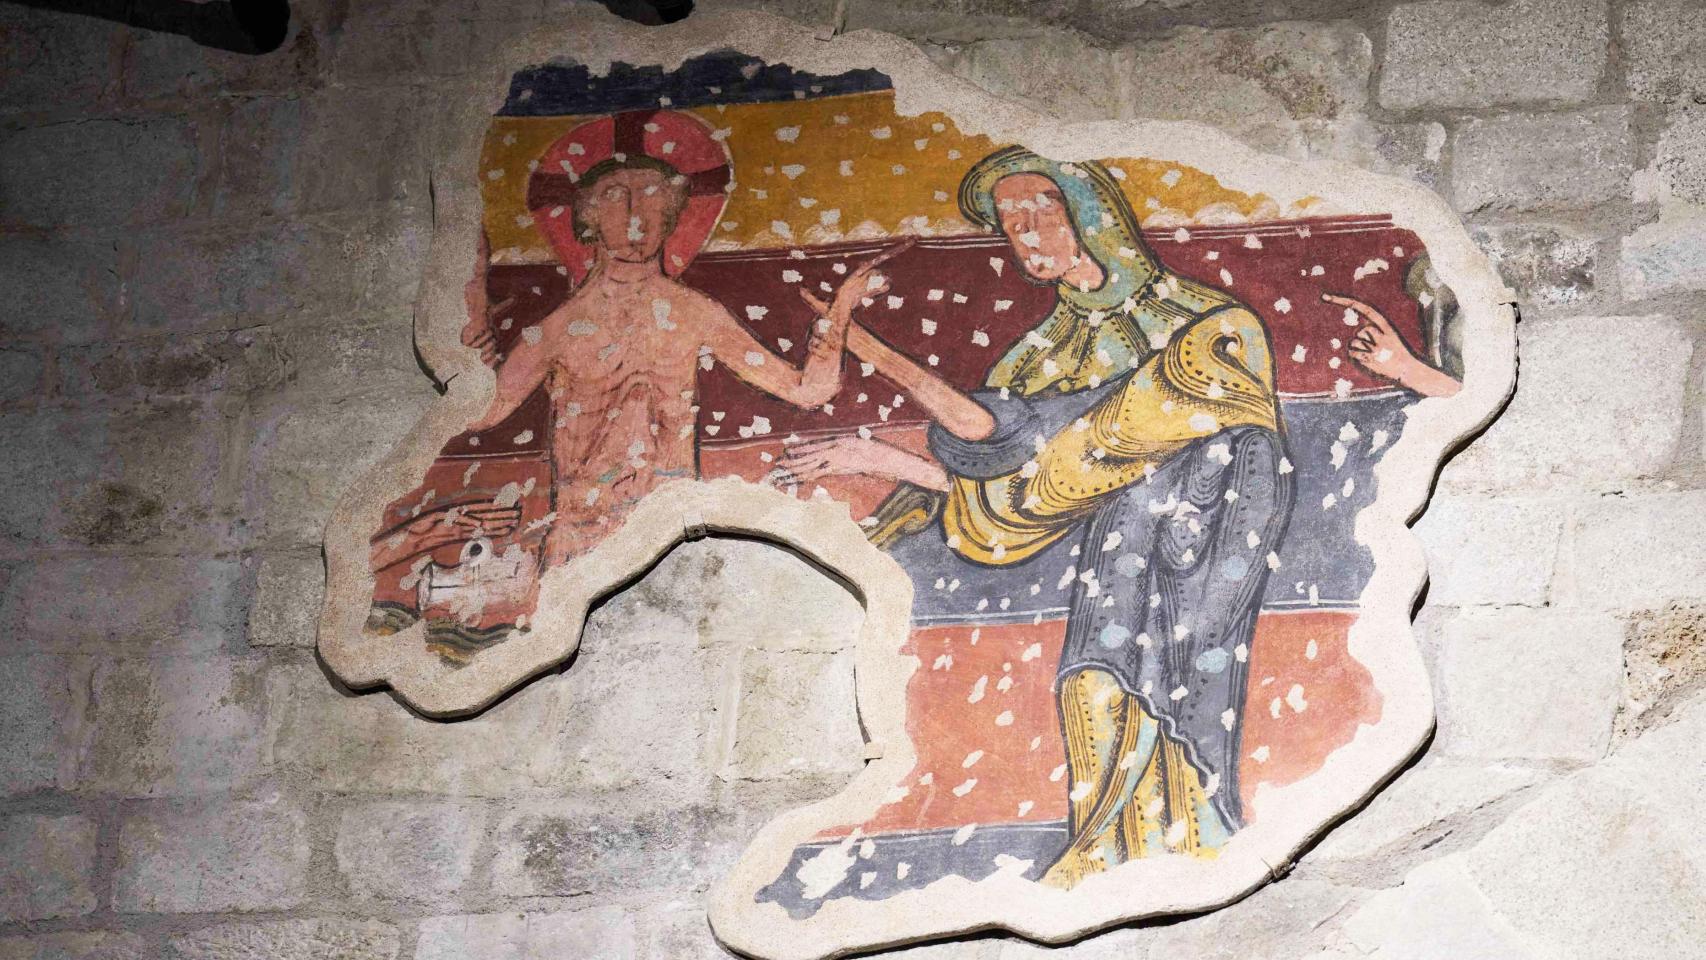 Composición mural 'El Bany de Jesús' en Santa Maria de Taüll